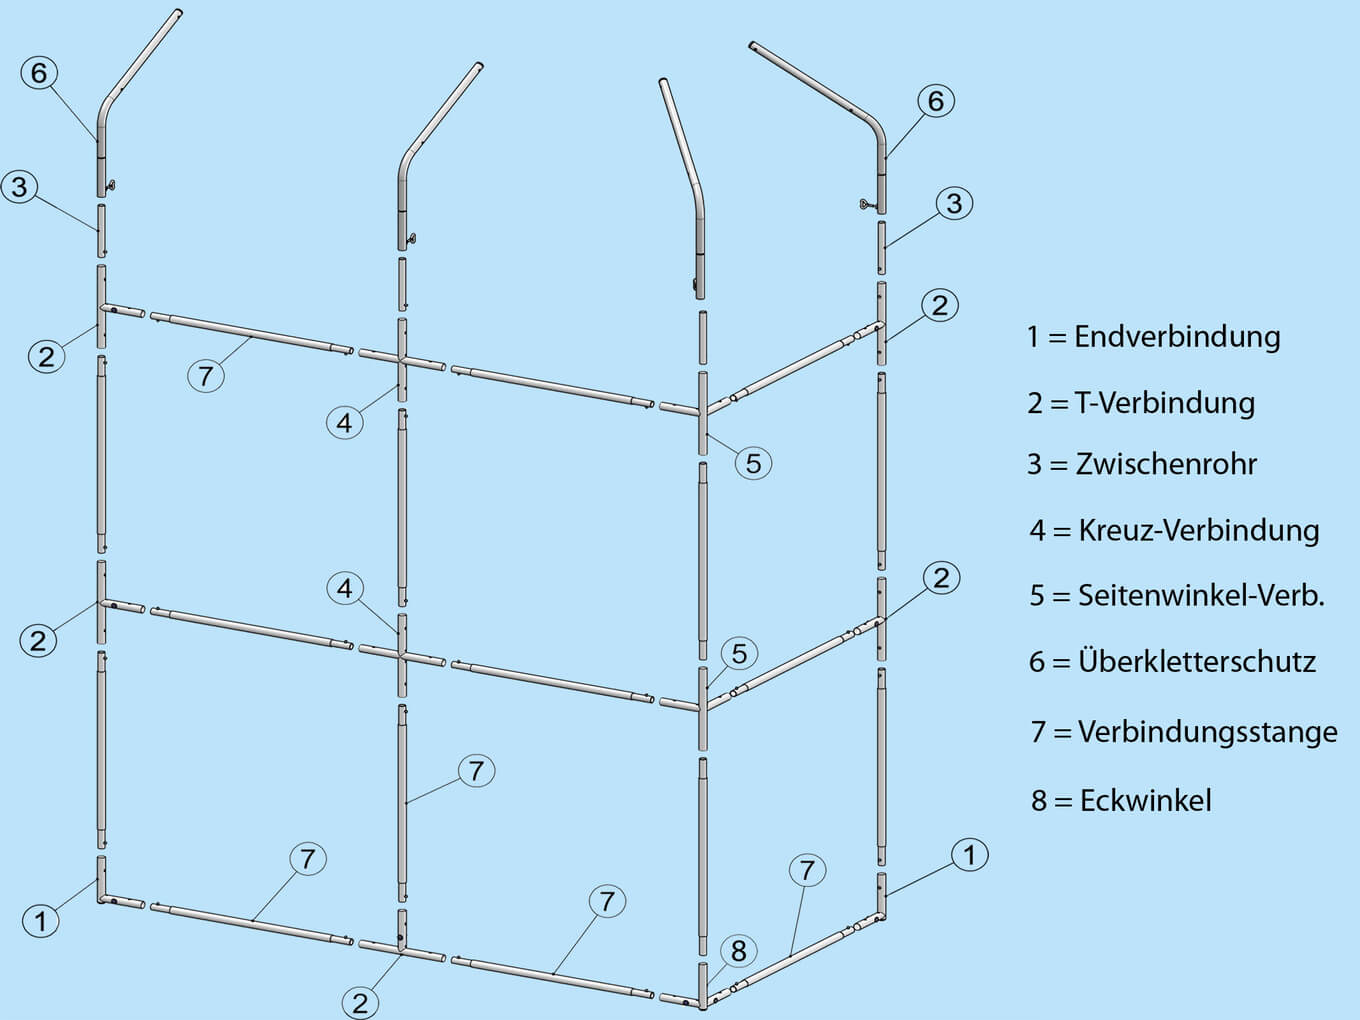 Rahmensystem mit Verbindungsstangen an allen vier Seiten